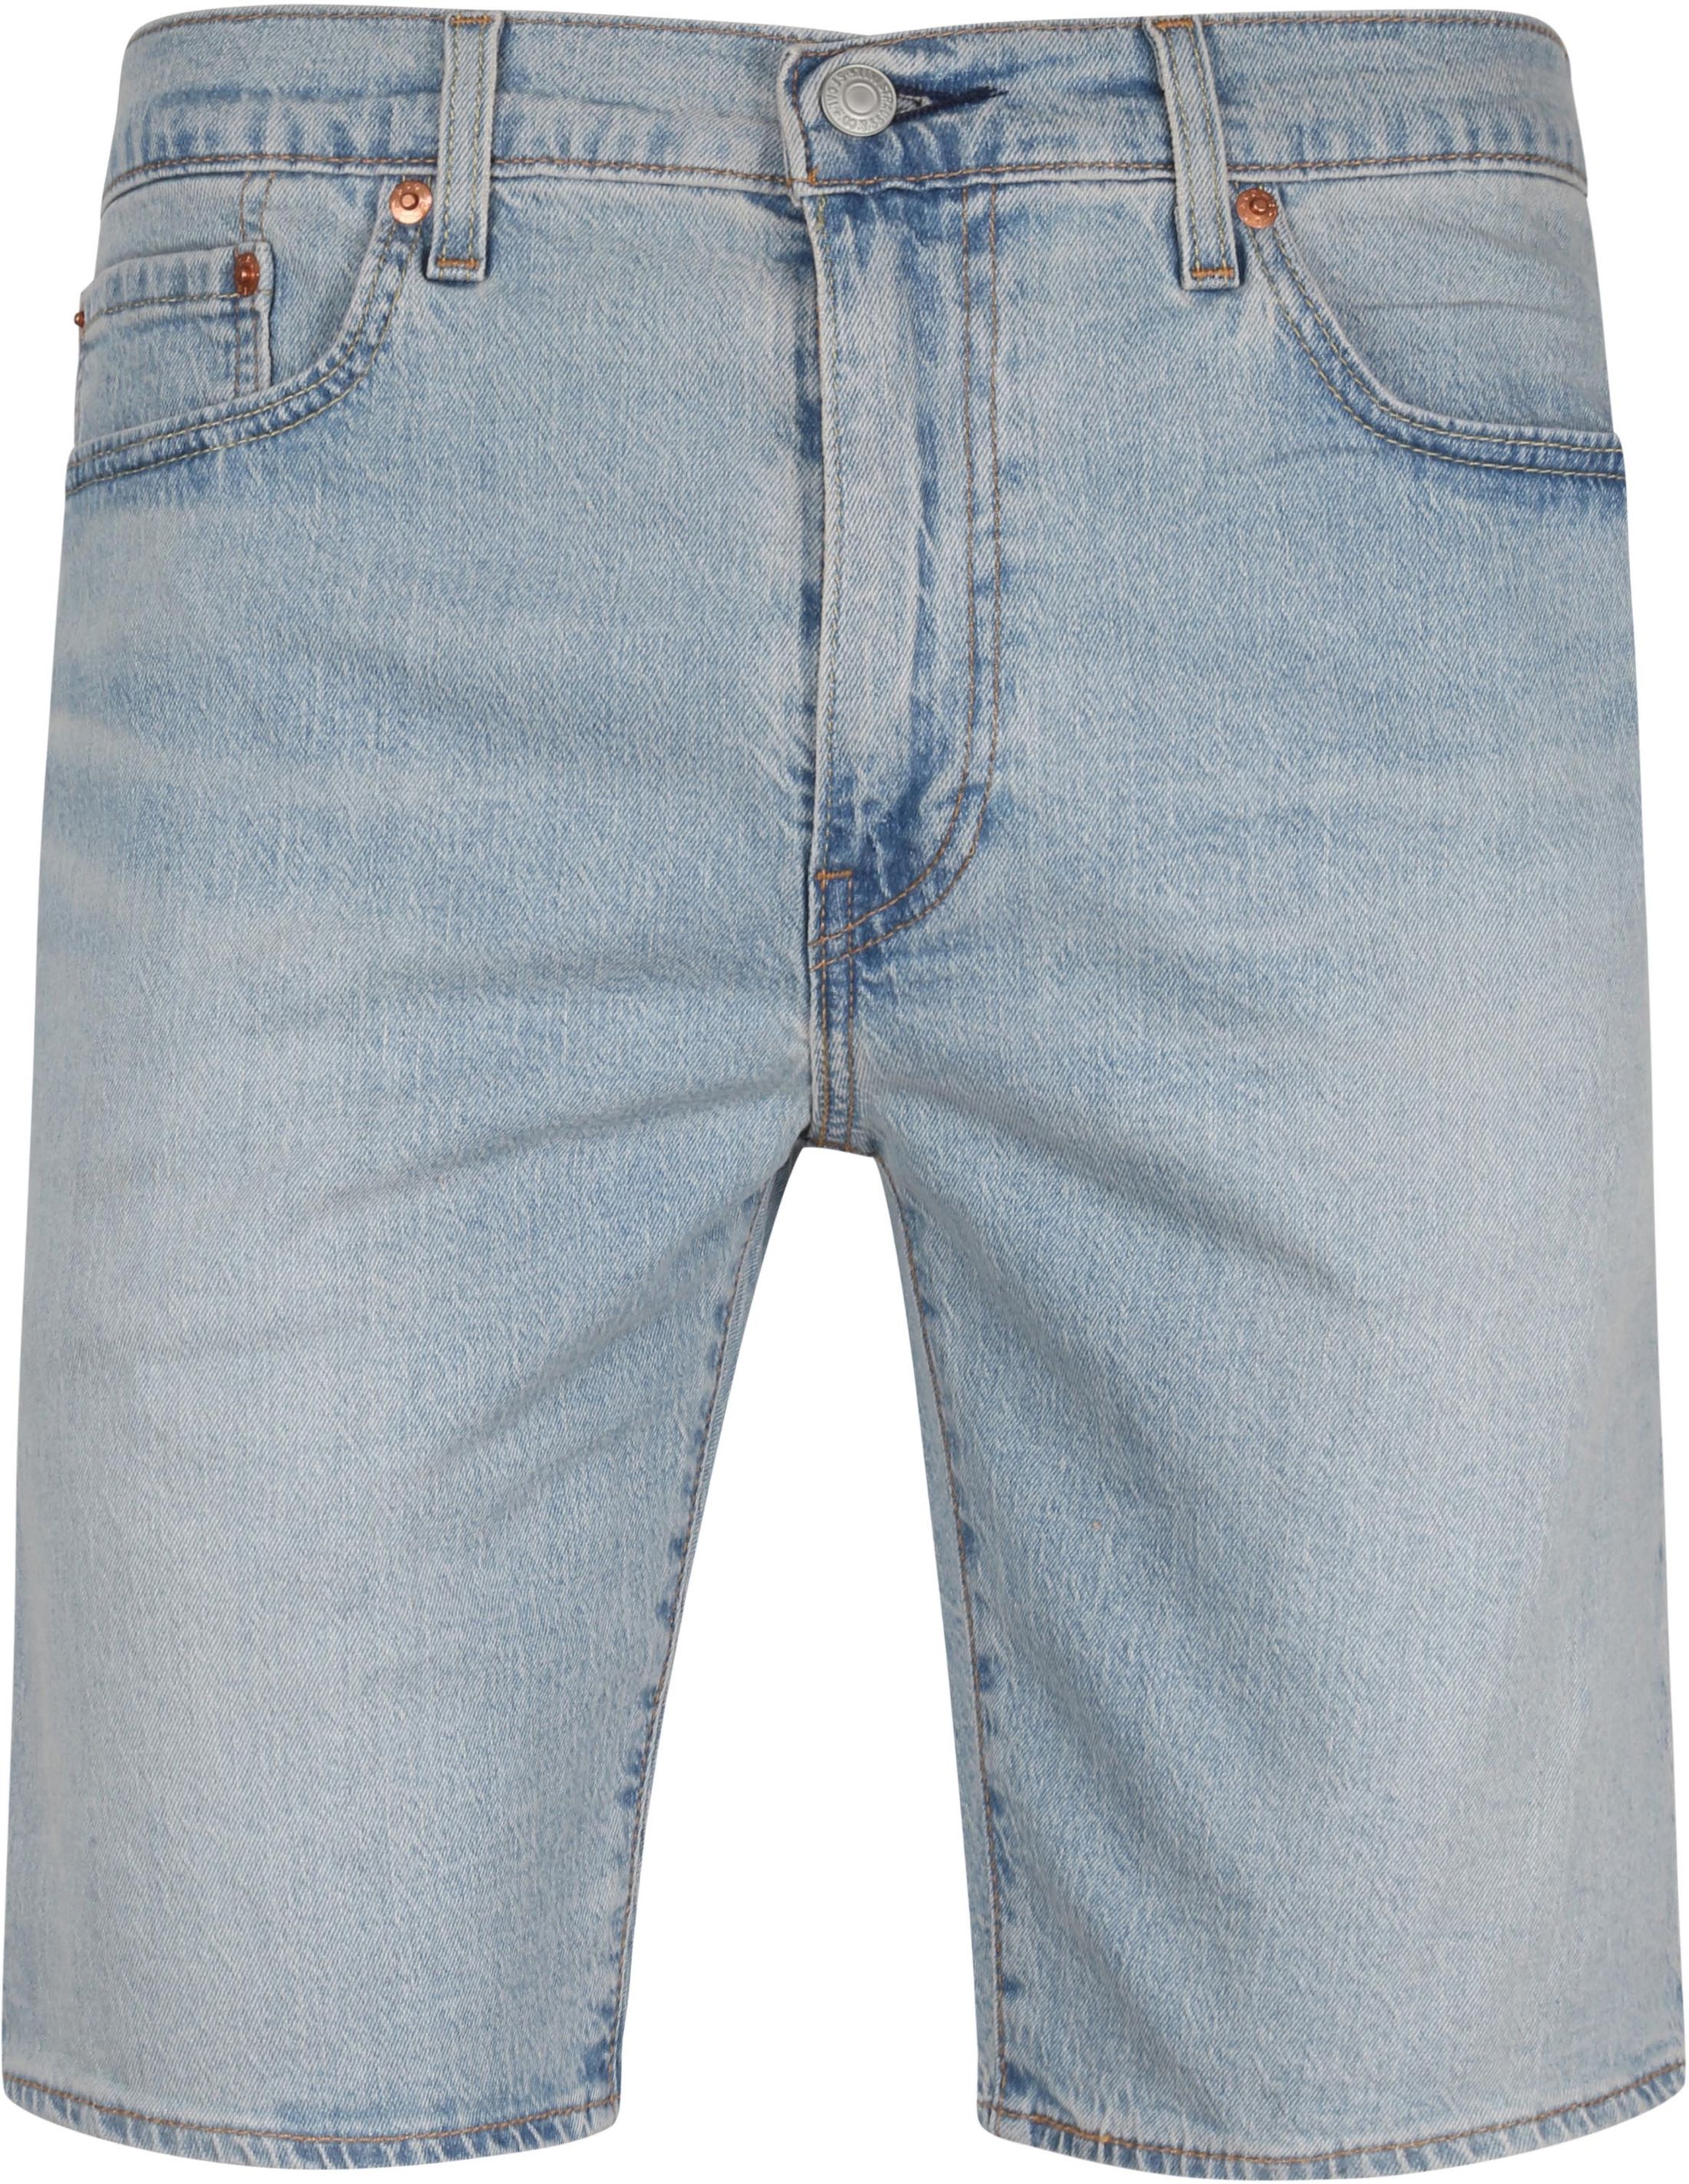 Levis - Levi's 405 denim shorts light blue size 31